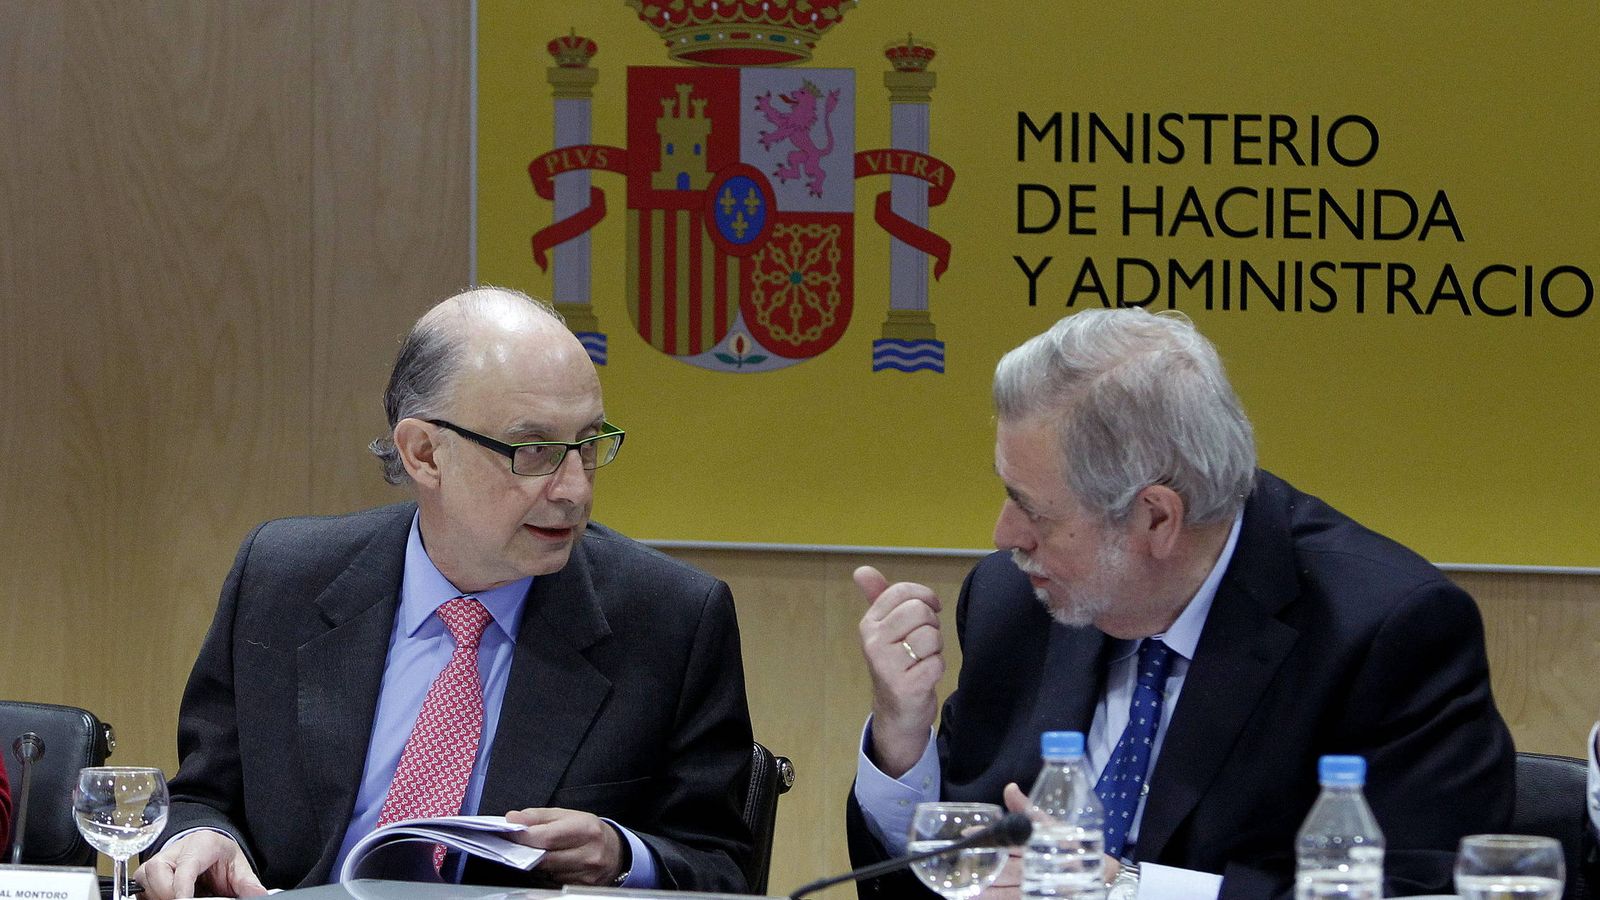 Foto: El ministro de Hacienda y Administraciones Públicas, Cristóbal Montoro (i), junto al secretario de Estado de Administraciones Públicas, Antonio Beteta (d). (EFE)